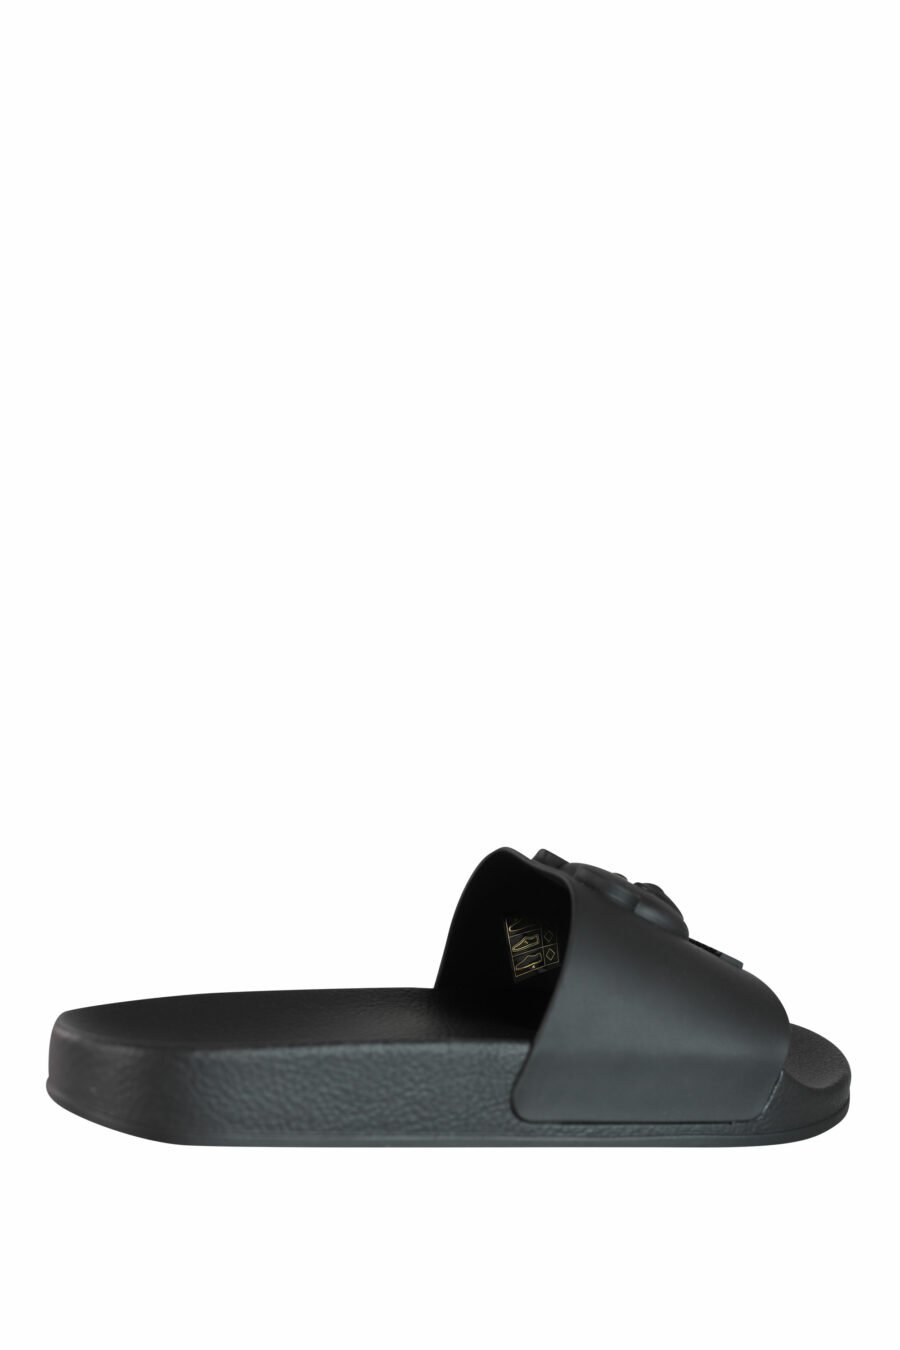 Schwarze Flip Flops mit einfarbig geprägtem Maxilogo - IMG 3574